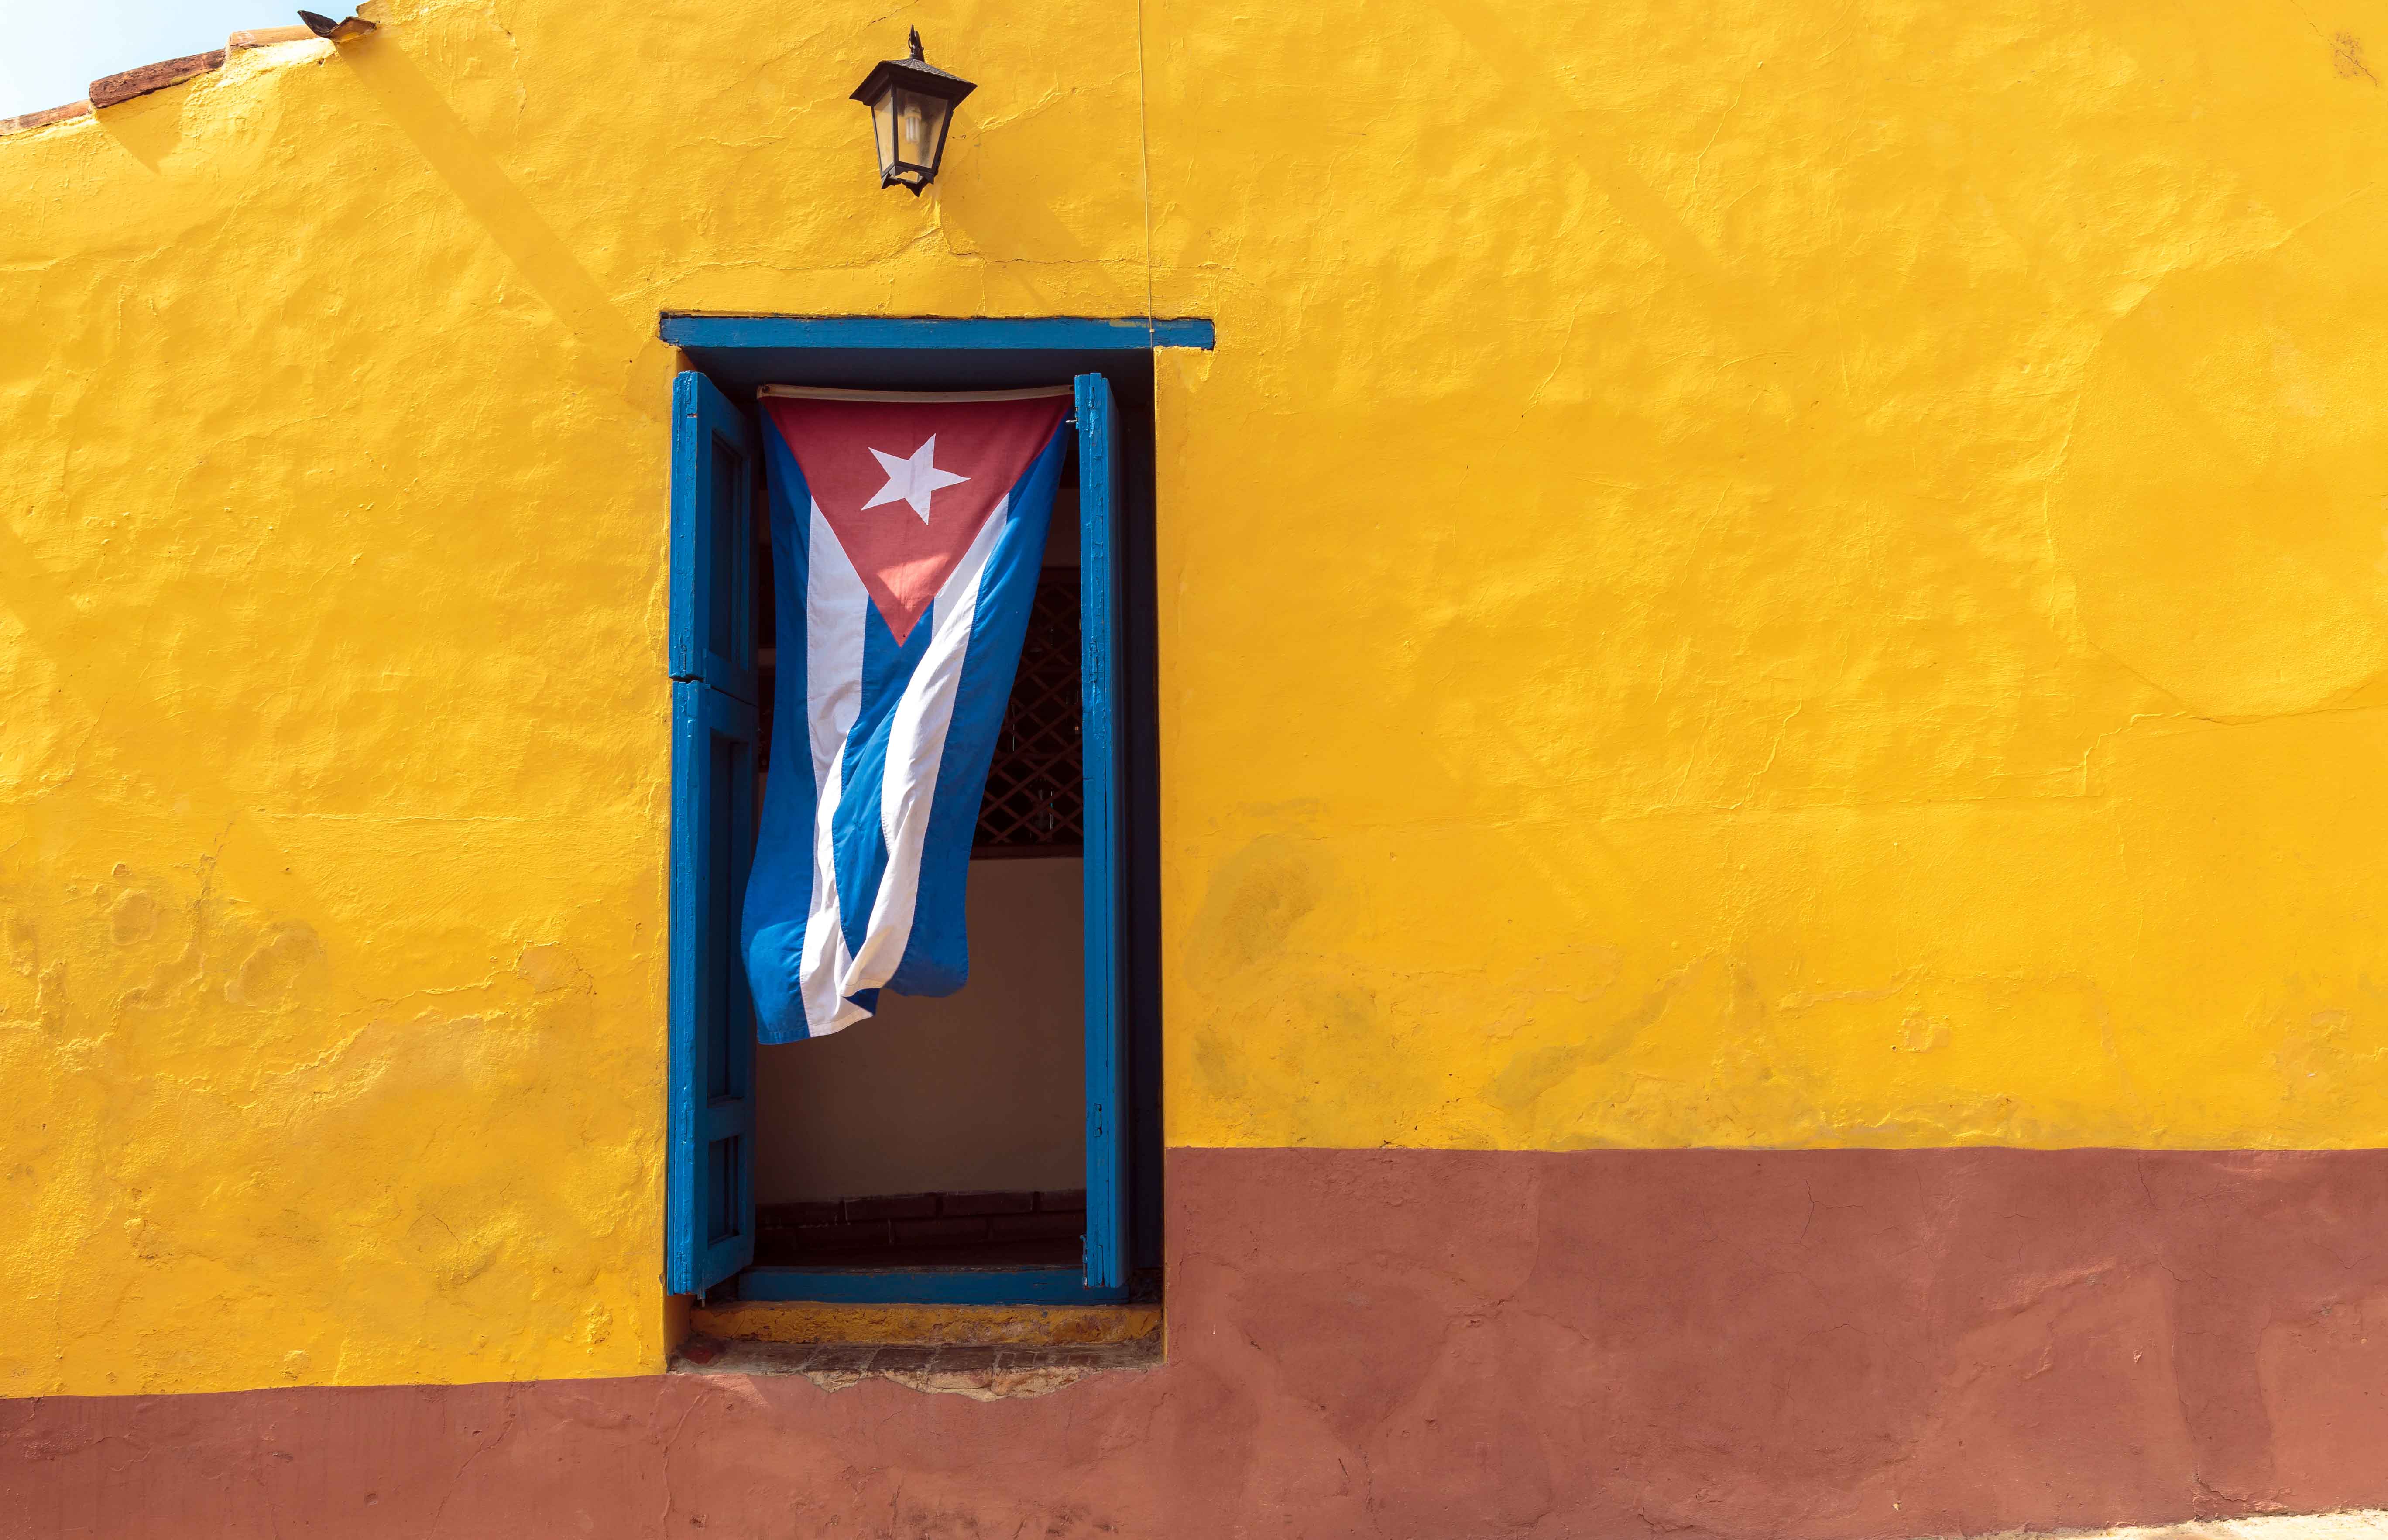 A Cuban flag hangs in a window in Old Havana